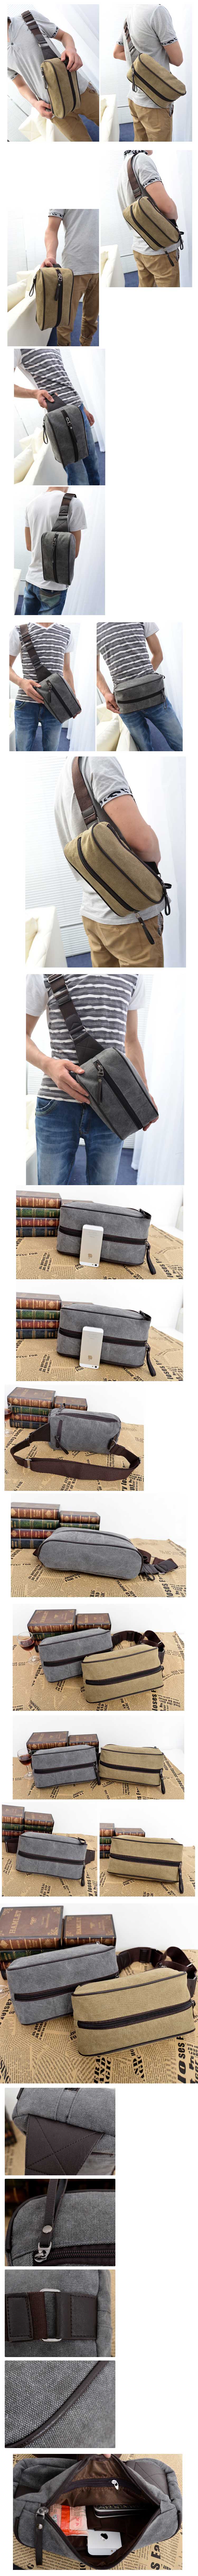 jual tas gadget pria model selempang dan bisa juga dipakai sebagai tas pinggang, terbuat dari bahan kanvas temukan koleksi tas gadget lain nya hanya di store.pakaianfashionpria.com